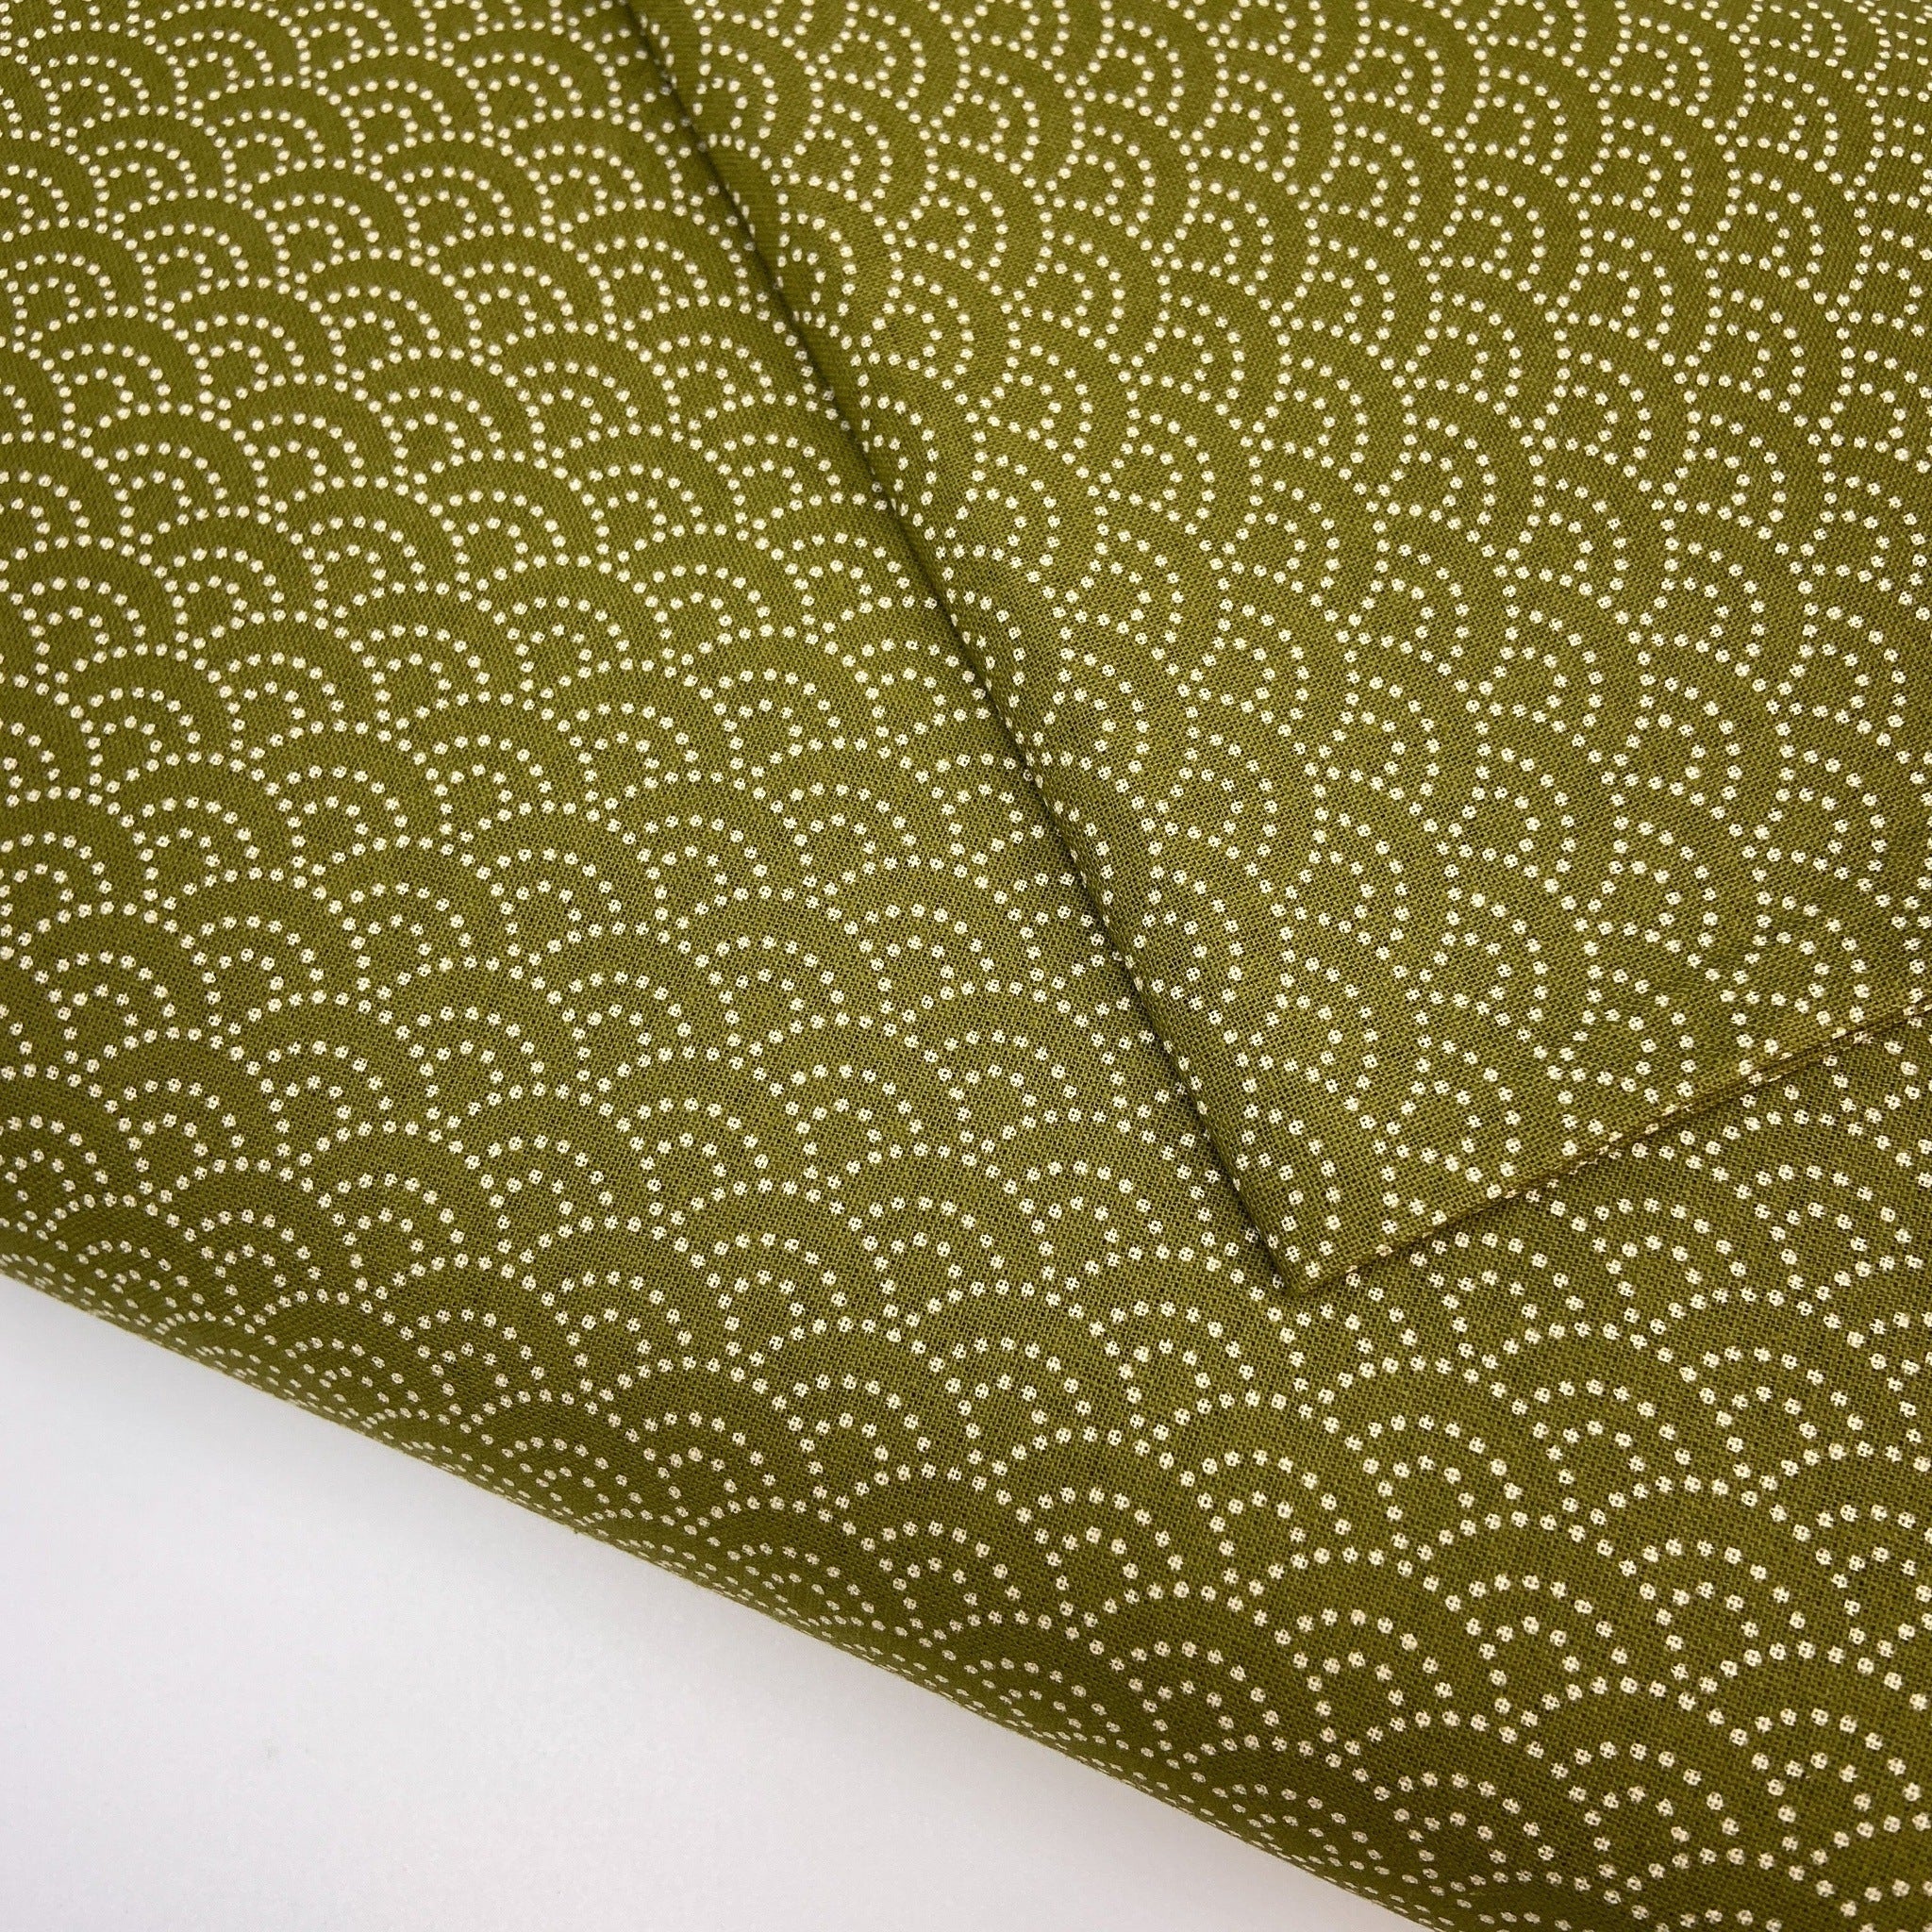 Japanese Cotton Sheeting Print - Waves Warbler Green